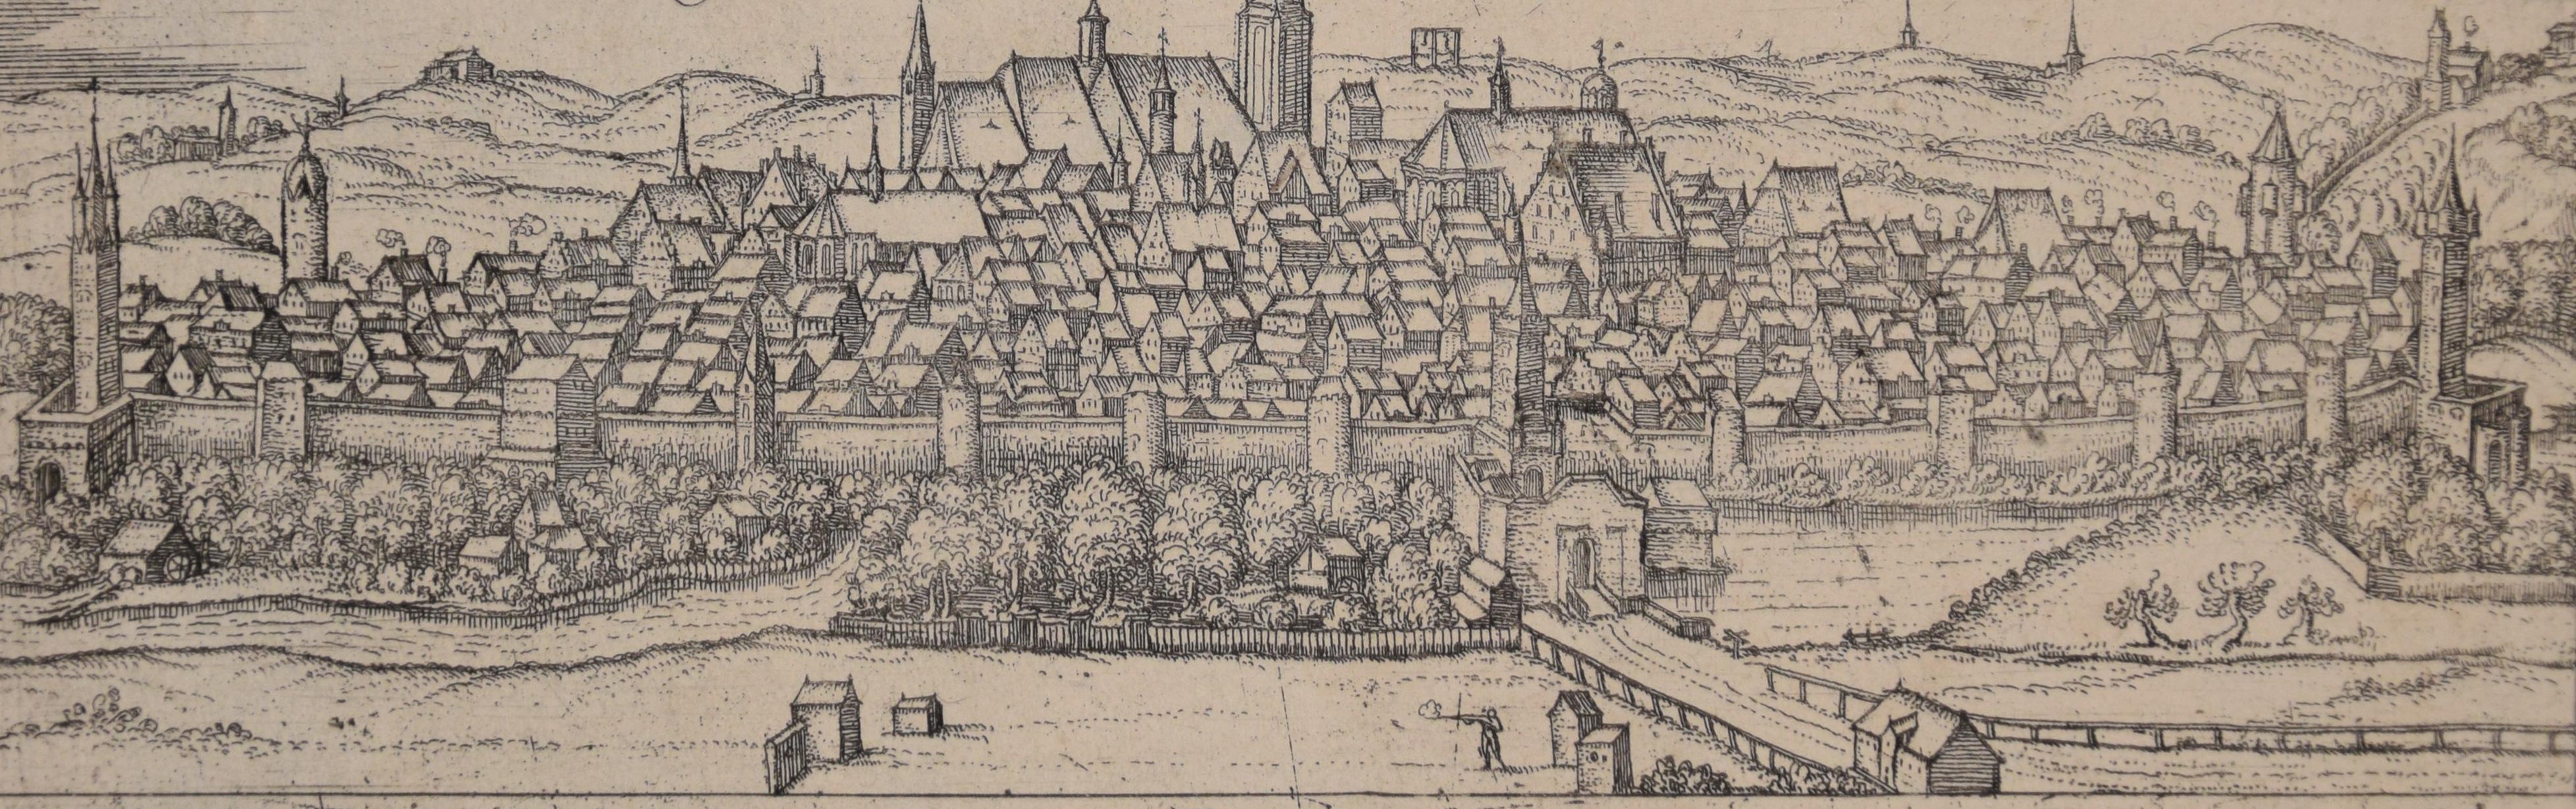 Nordlingen, Antique Map from